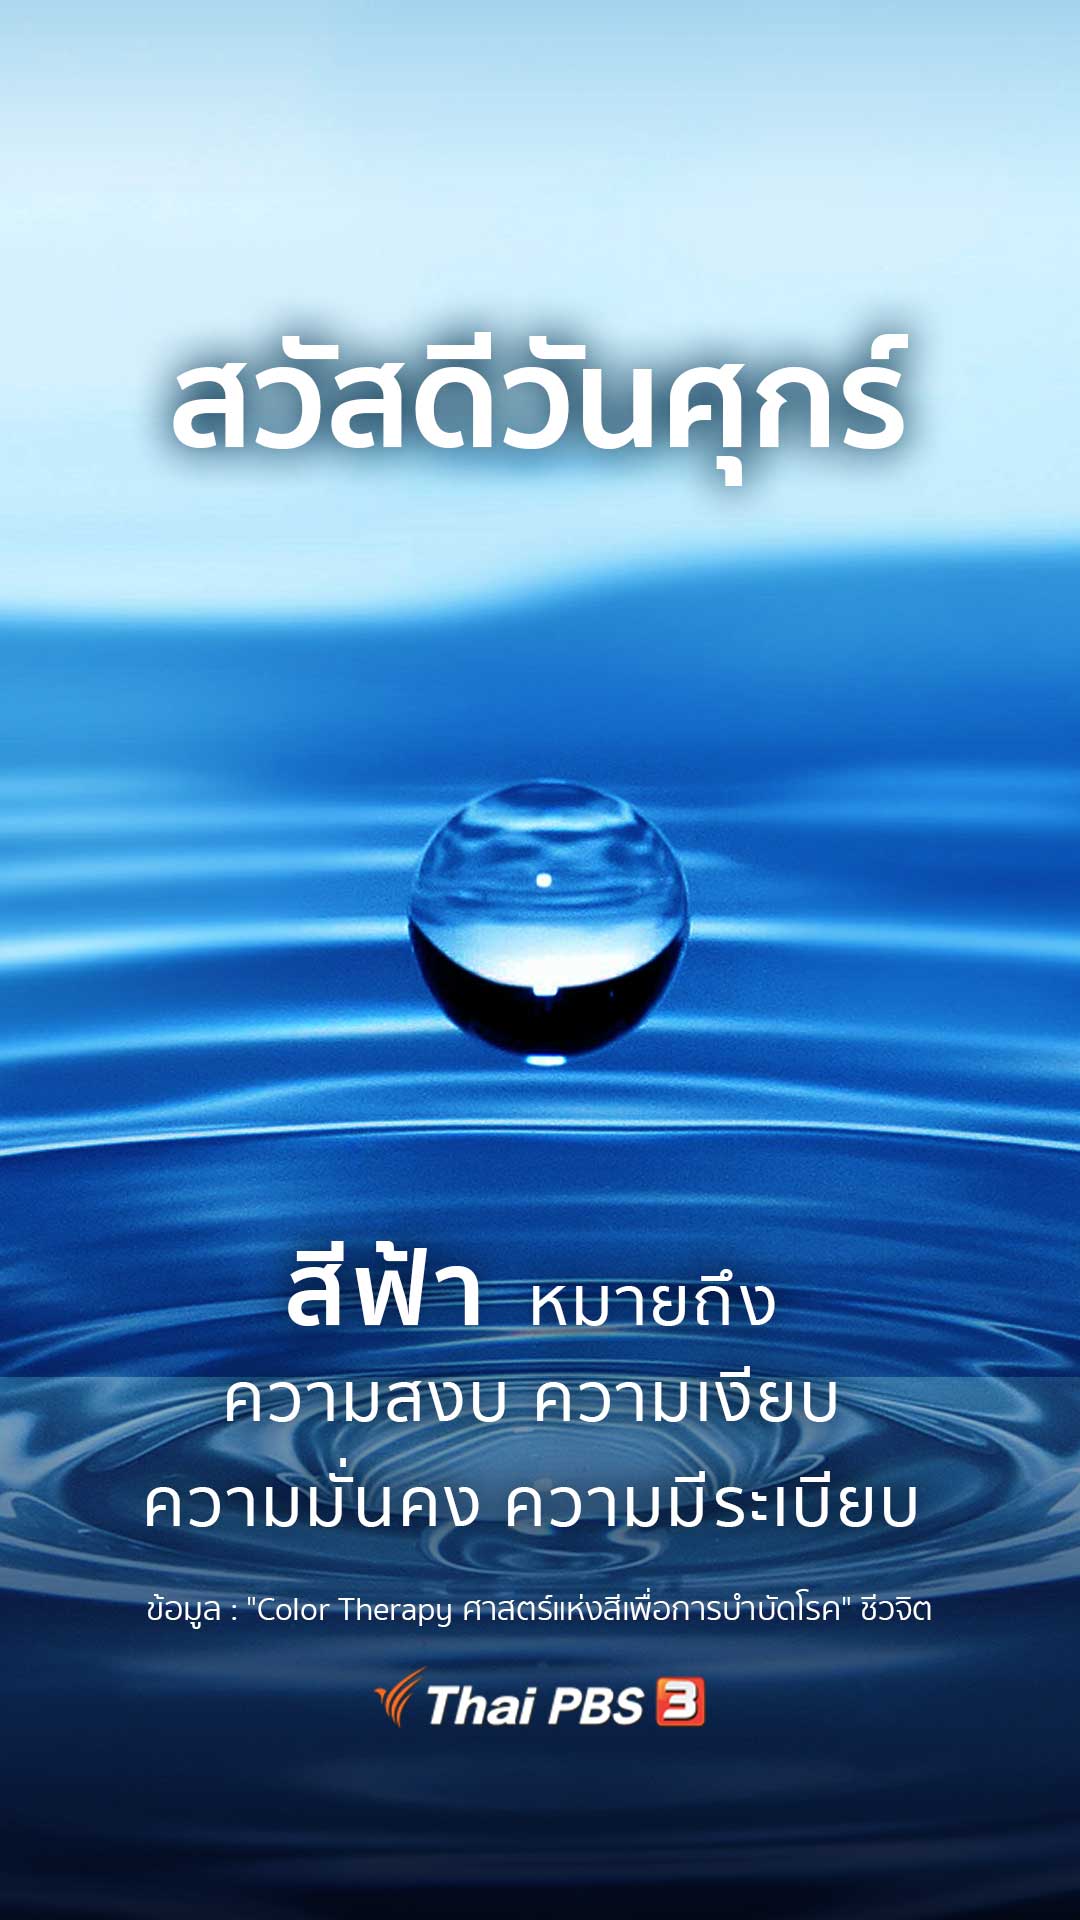 ความหมายของสีฟ้า - Thai Pbs สวัสดีทุกสีวัน